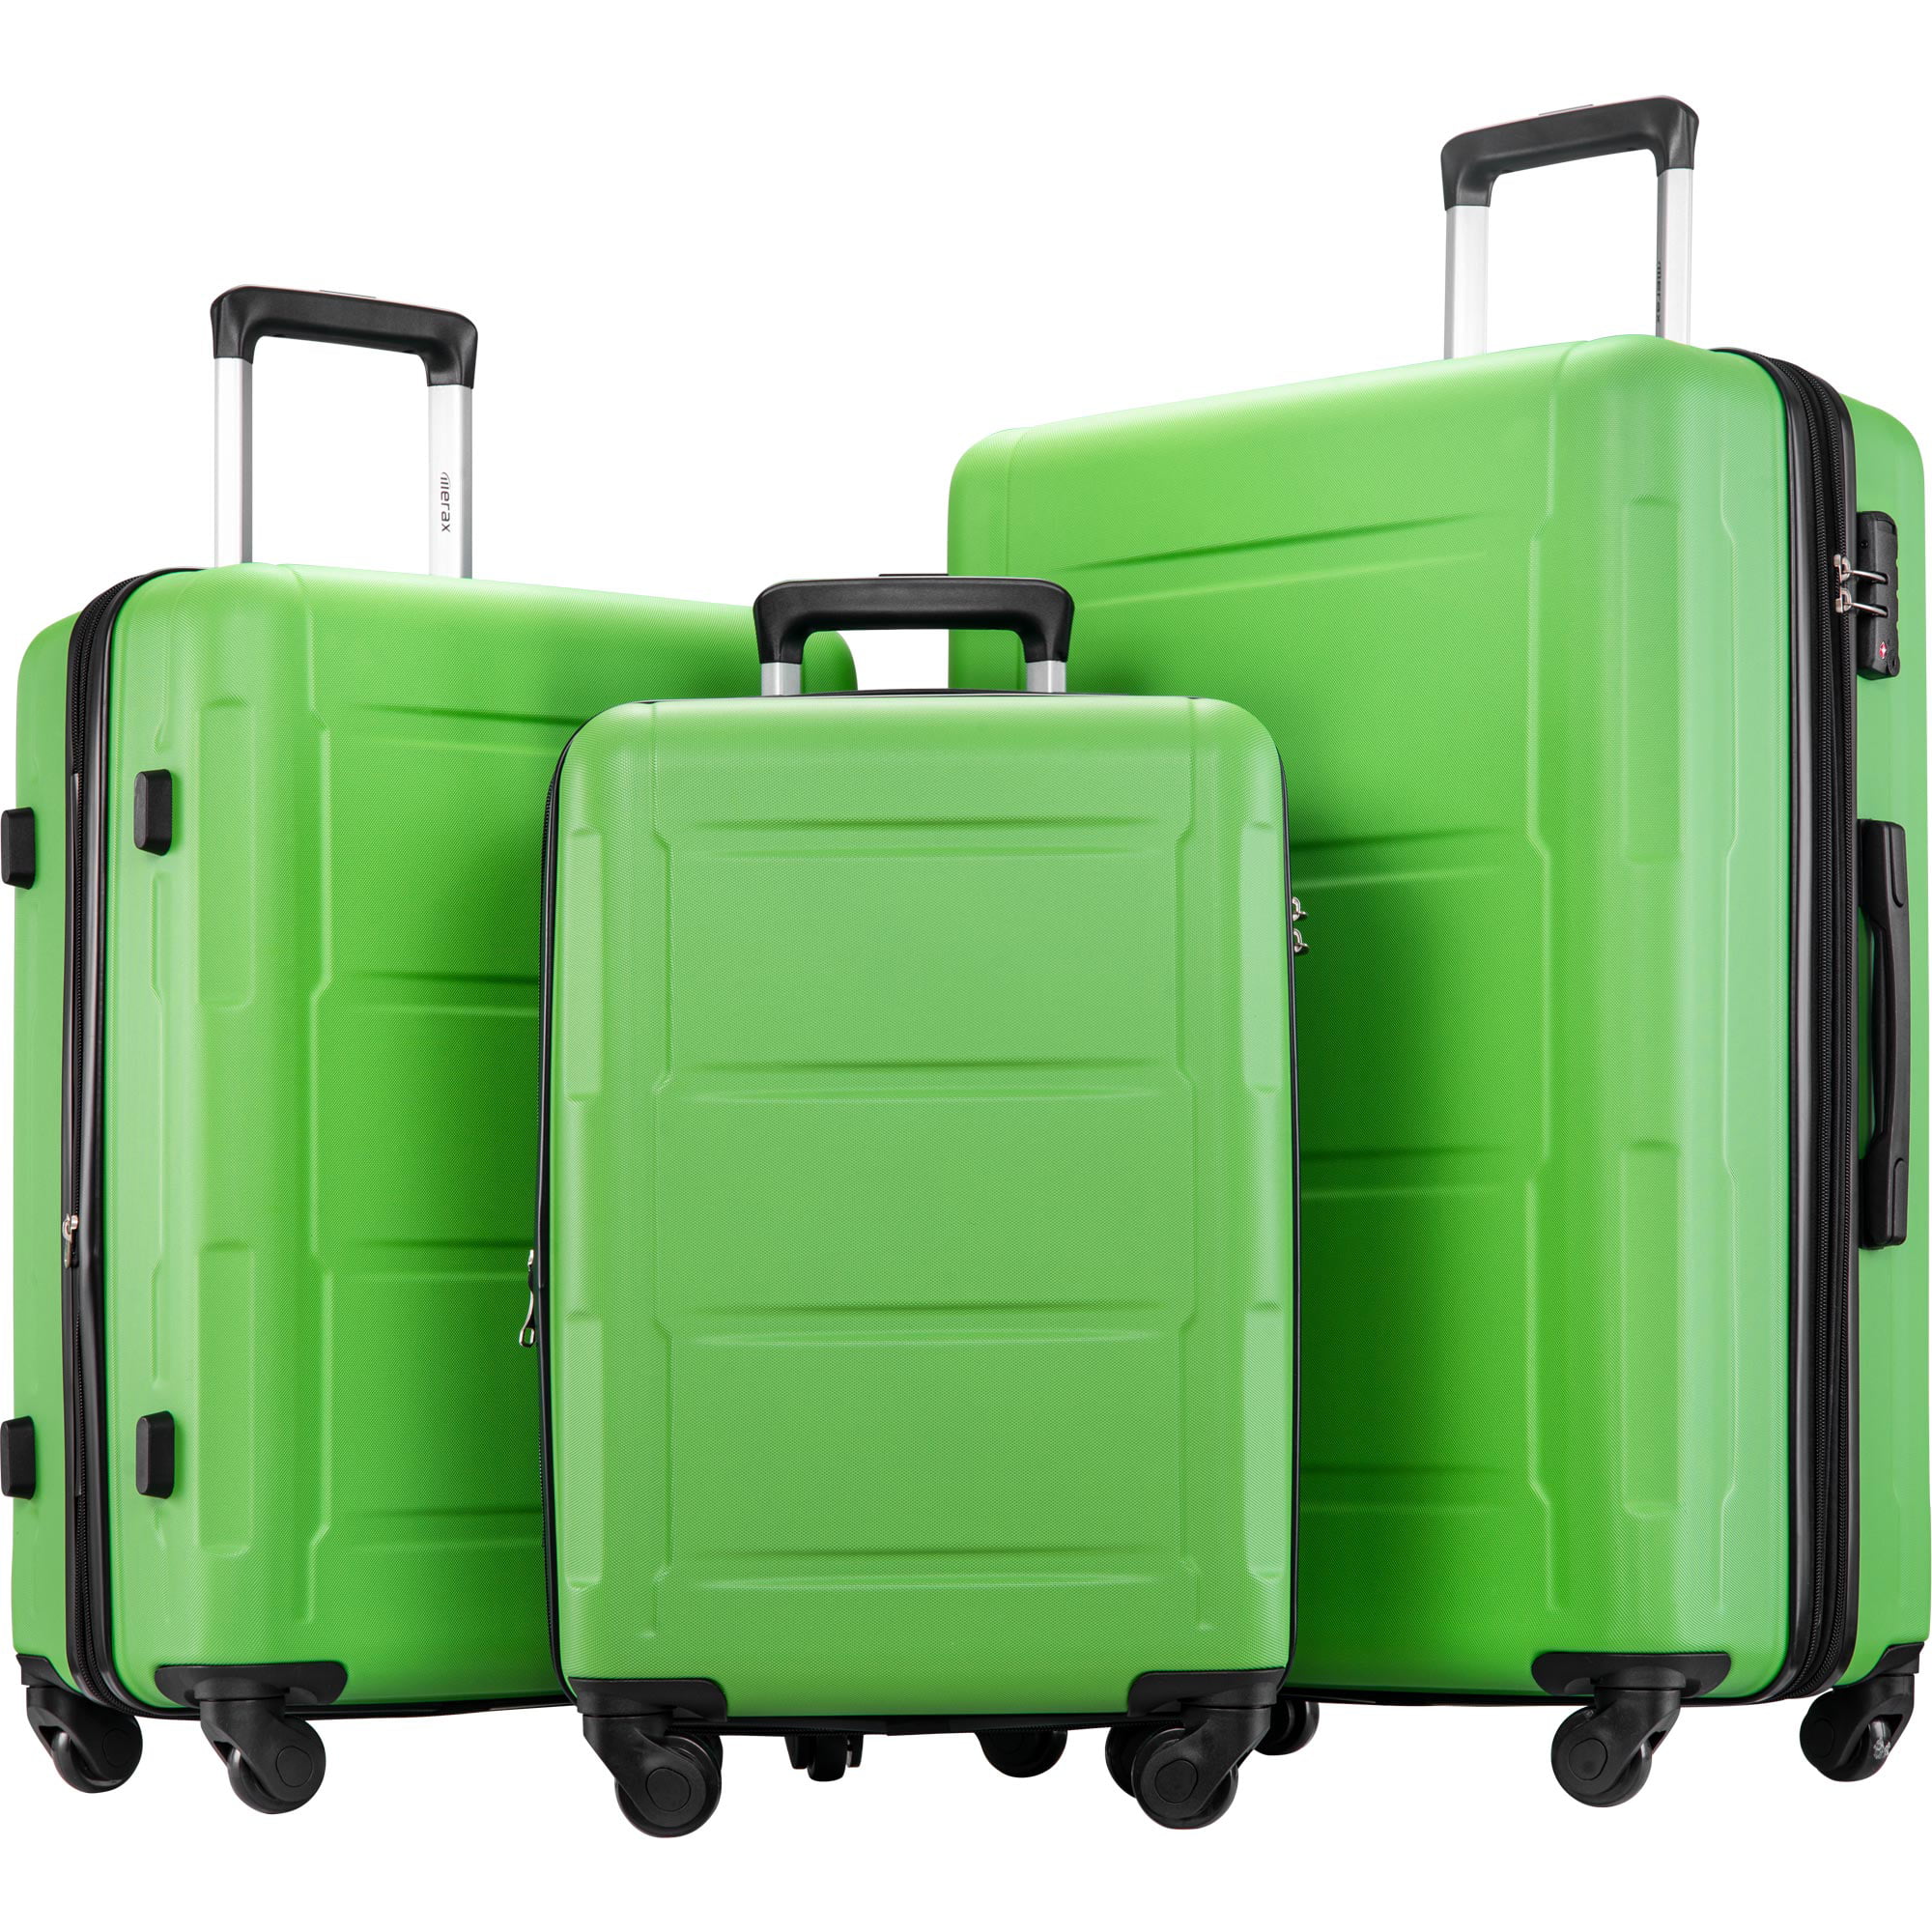 SEGMART Expandable Luggage Sets of 3, 3-Piece Nepal | Ubuy